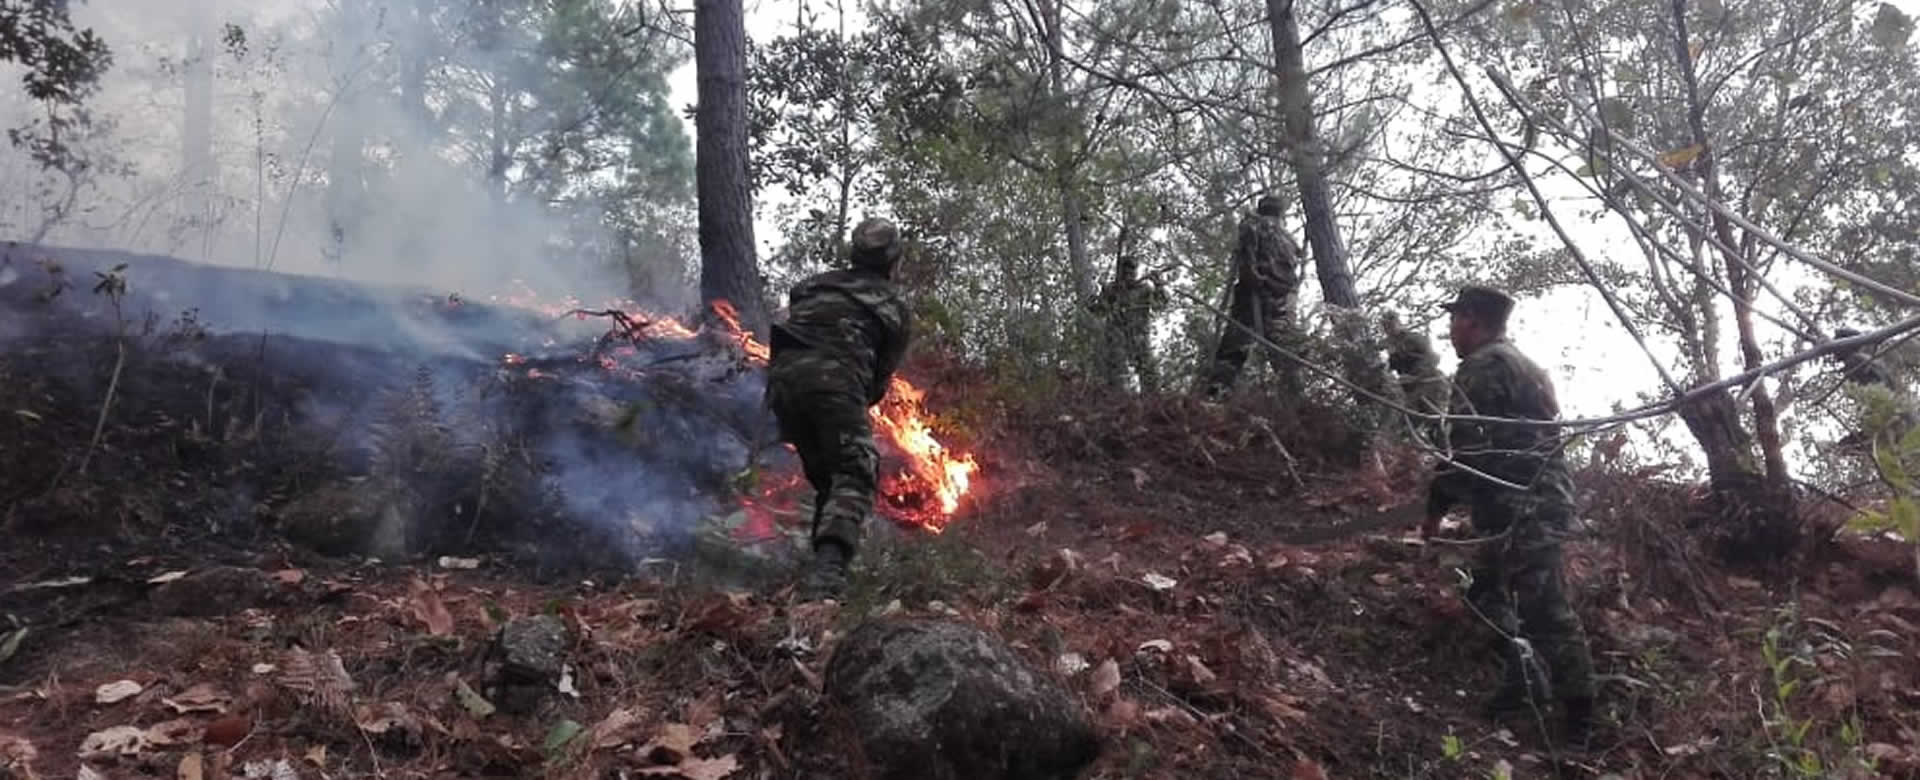 Brigadistas sofocan incendio forestal en una comunidad de Somoto